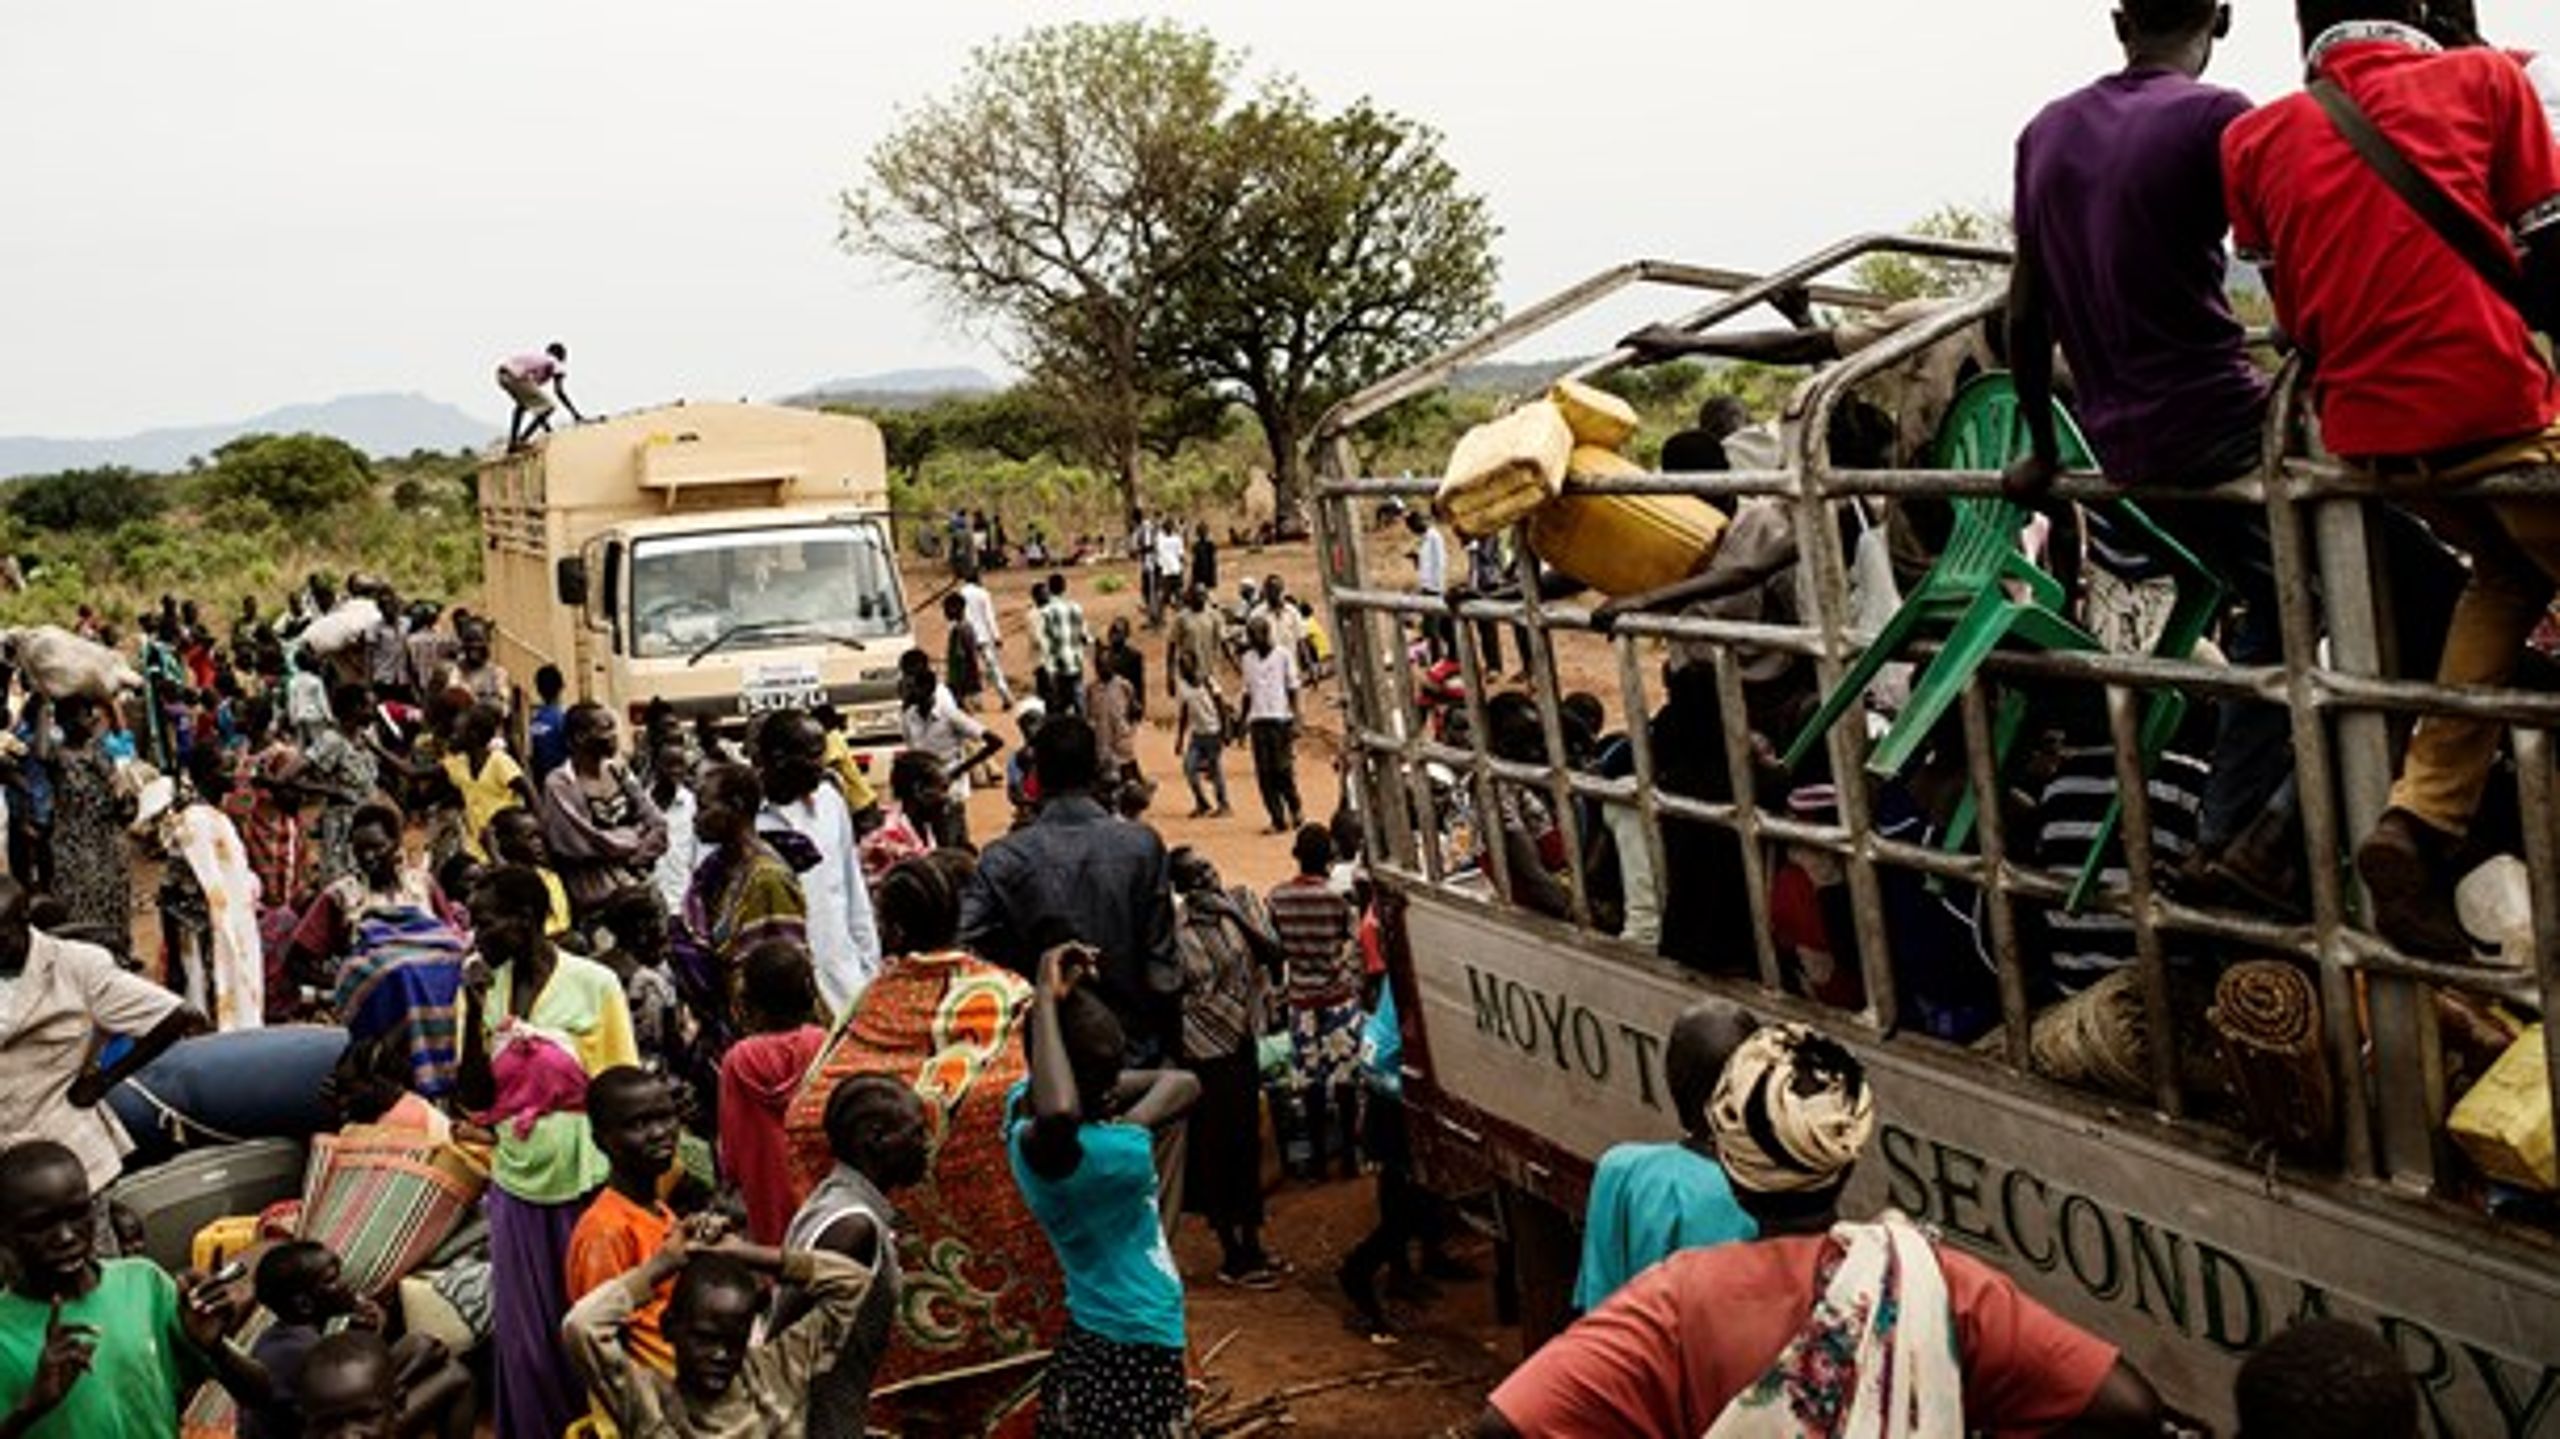 Unicef har fået frigivet 300 børnesoldater i Sydsudan, der i årevis har været præget af uroligheder.